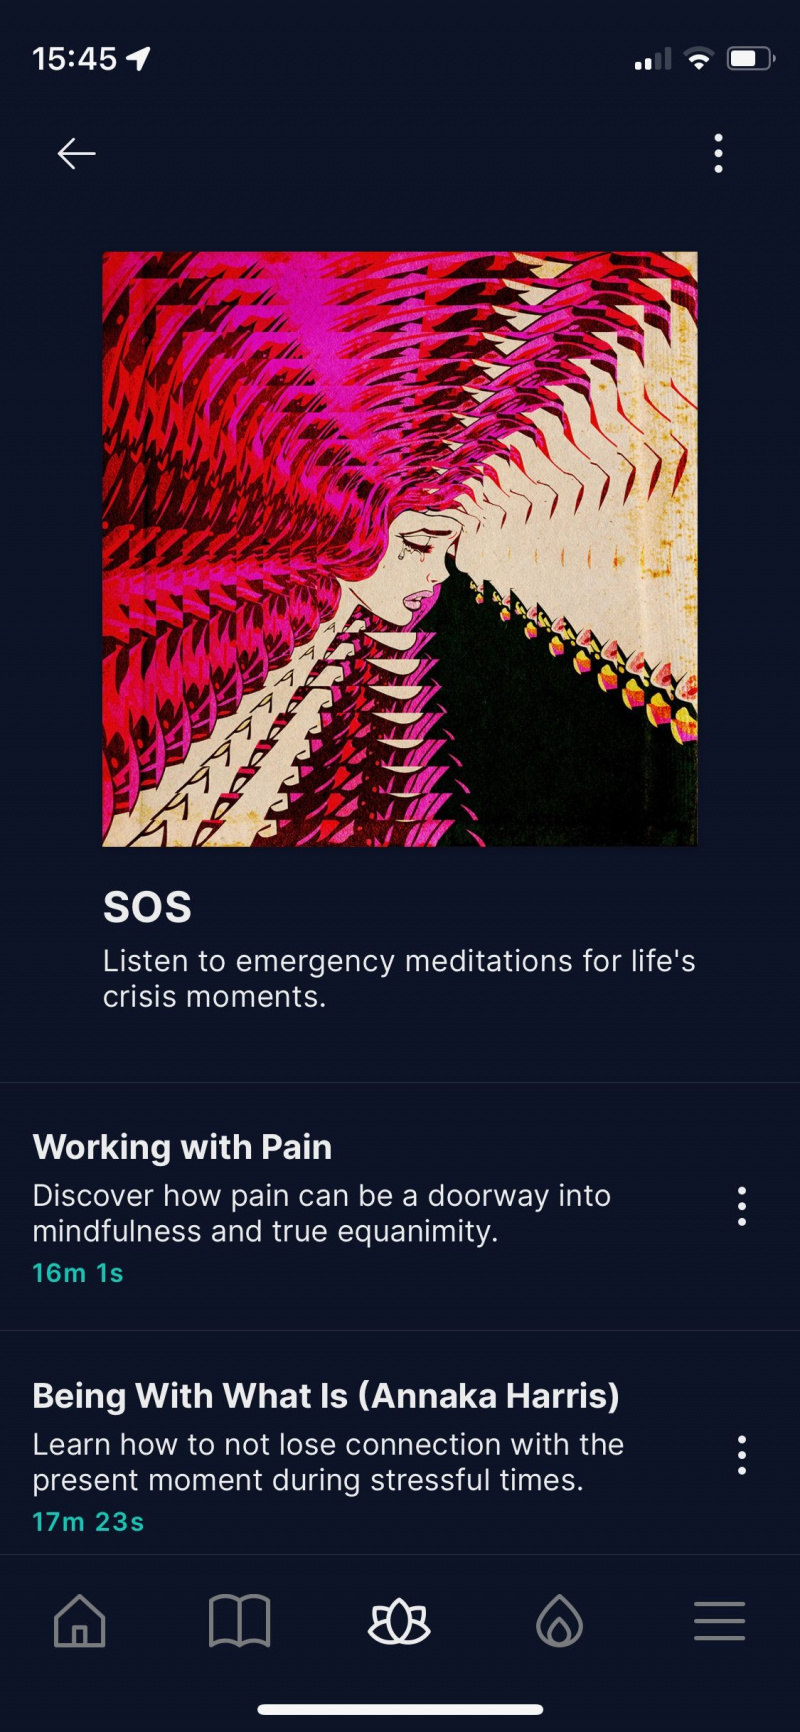   Captura de pantalla de la aplicación Waking Up que muestra la sección SOS de las meditaciones